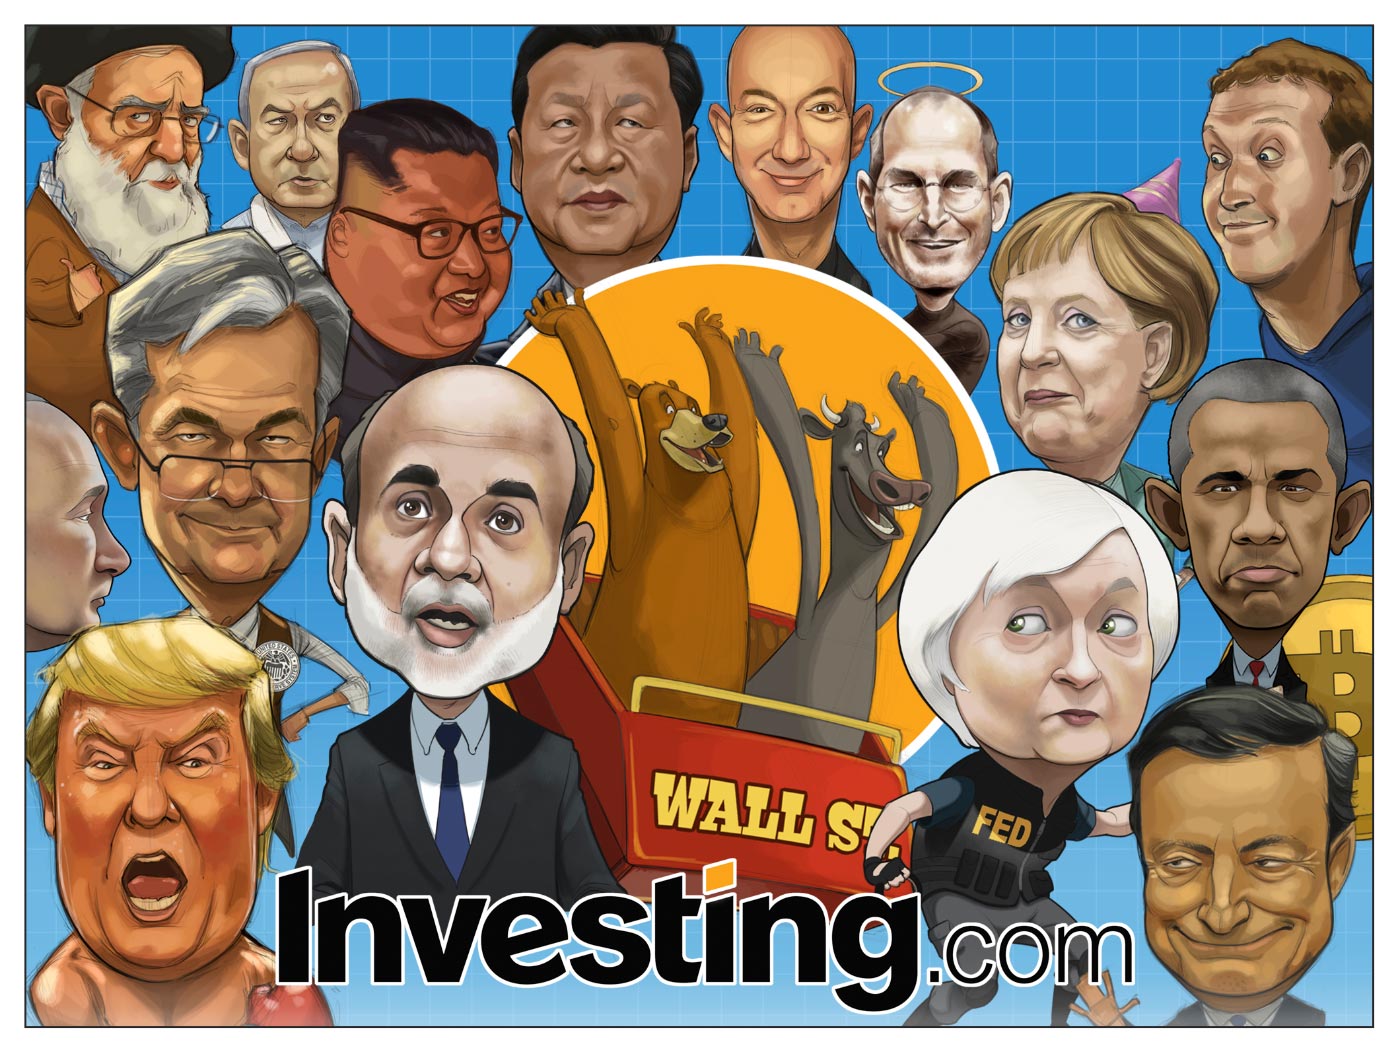 عدد رسومات الكاريكاتير من Investing.com يصل الى 250 ، من هي شخصيك المفضلة؟